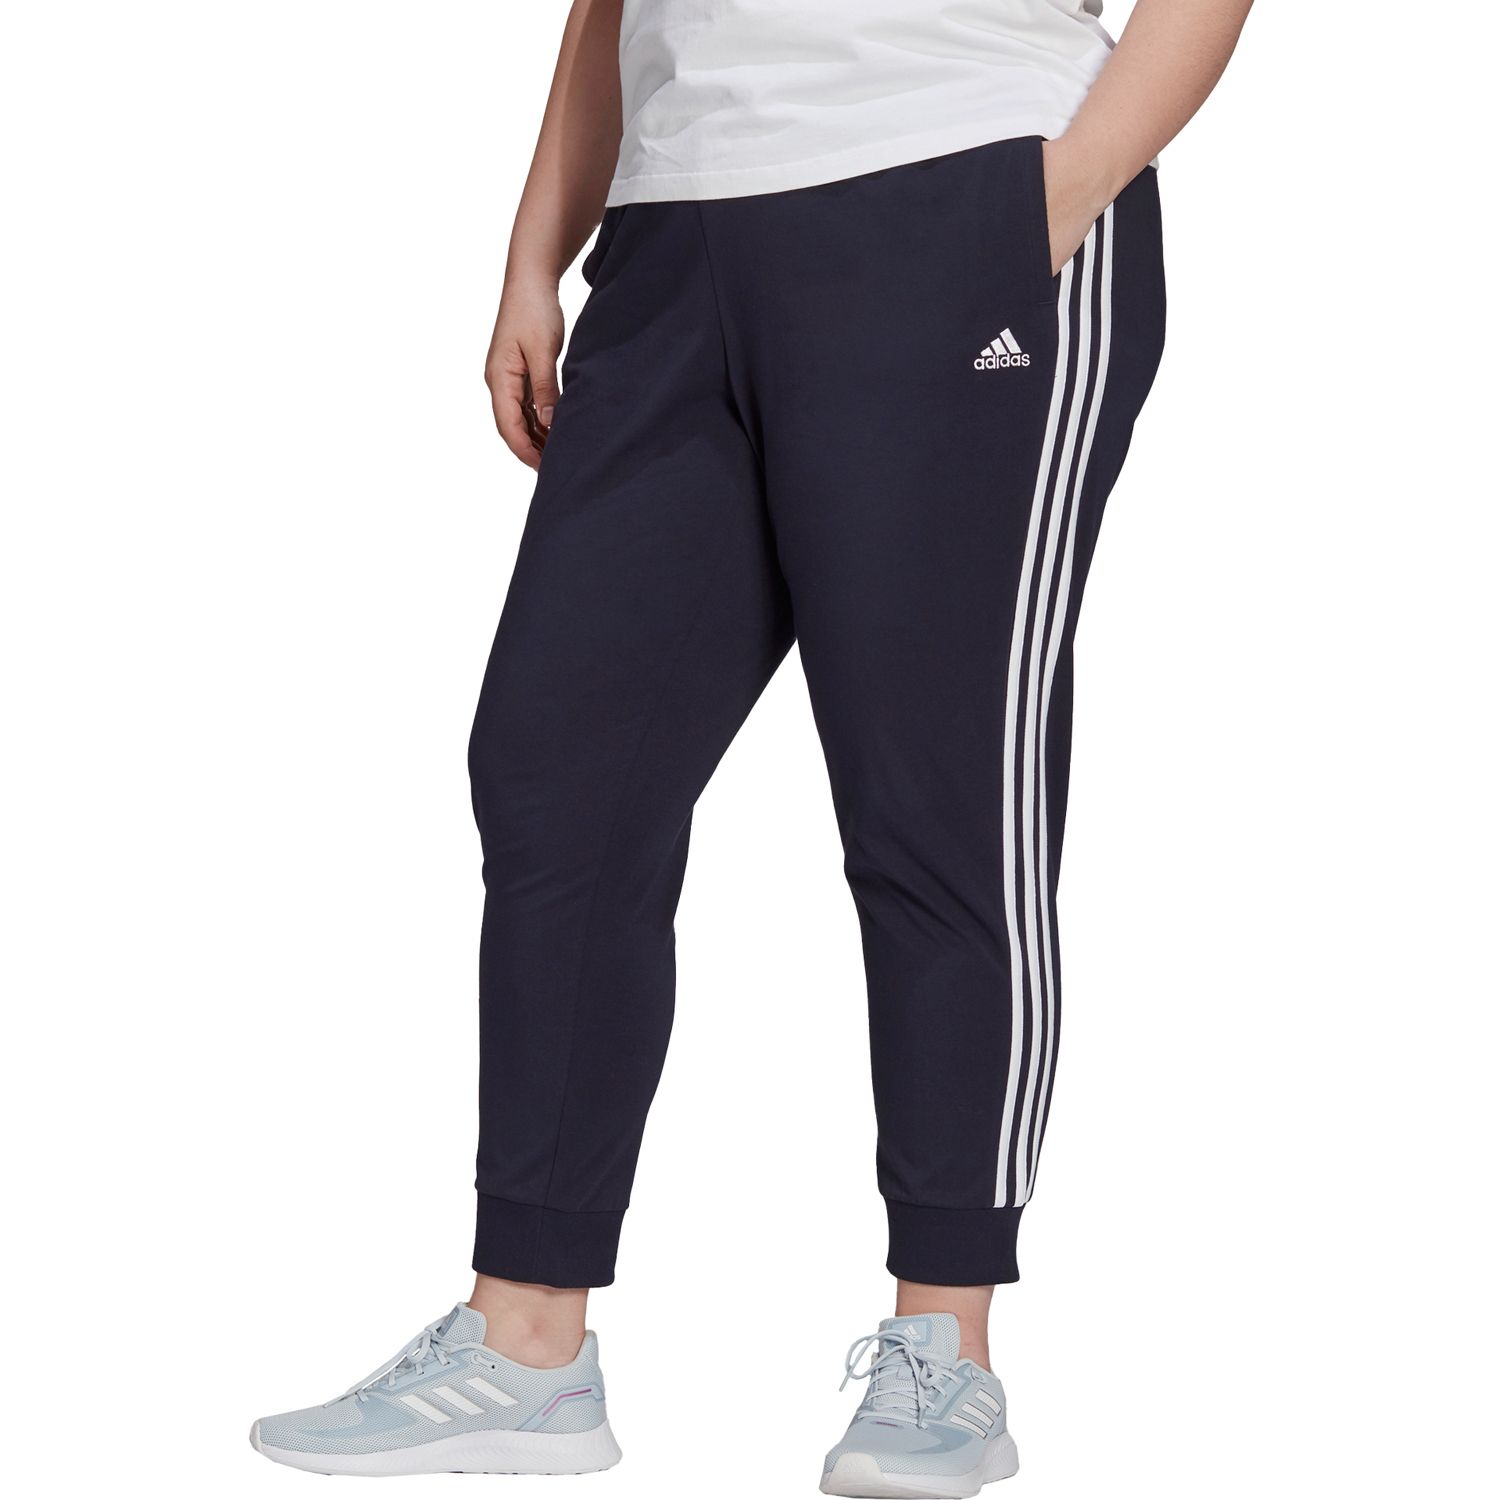 Womens Adidas Plus Clothing | Kohl's